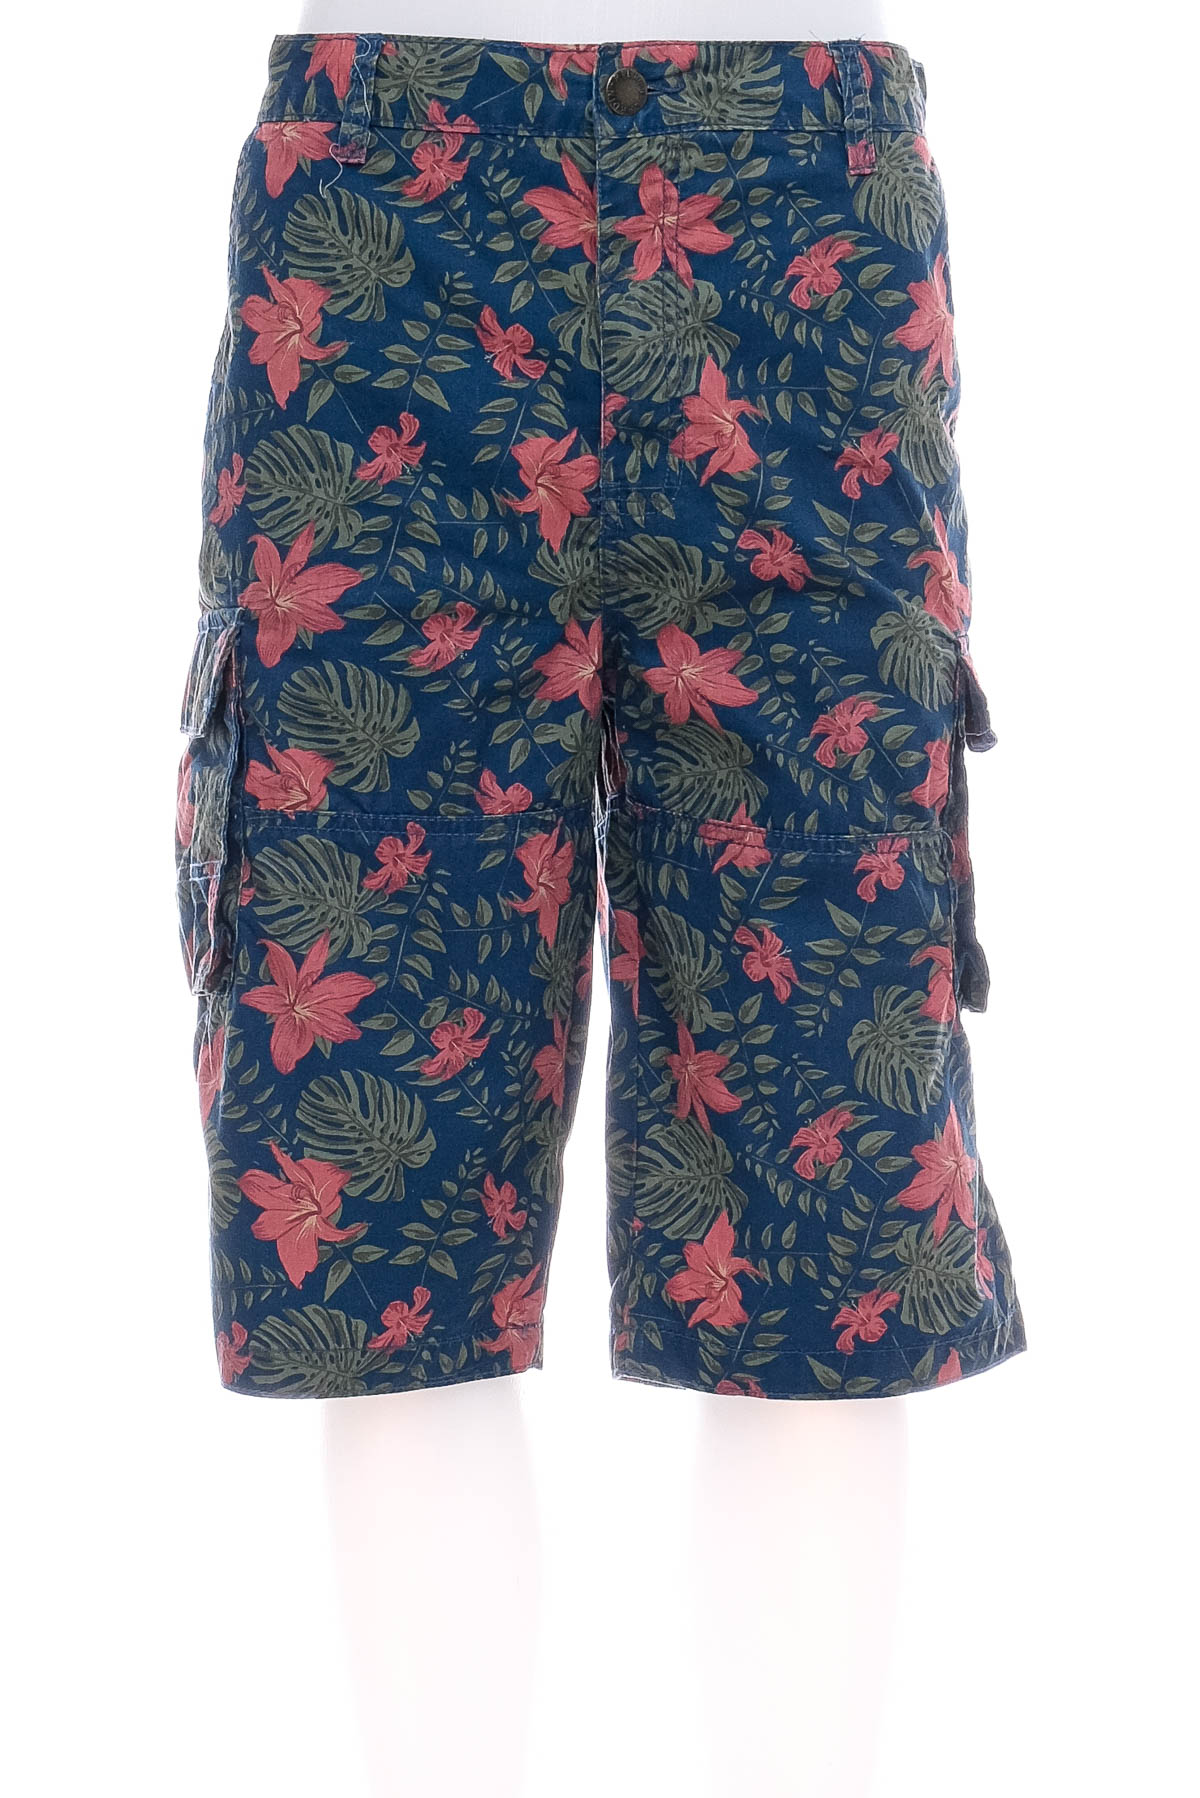 Men's shorts - Pierre Cardin - 0